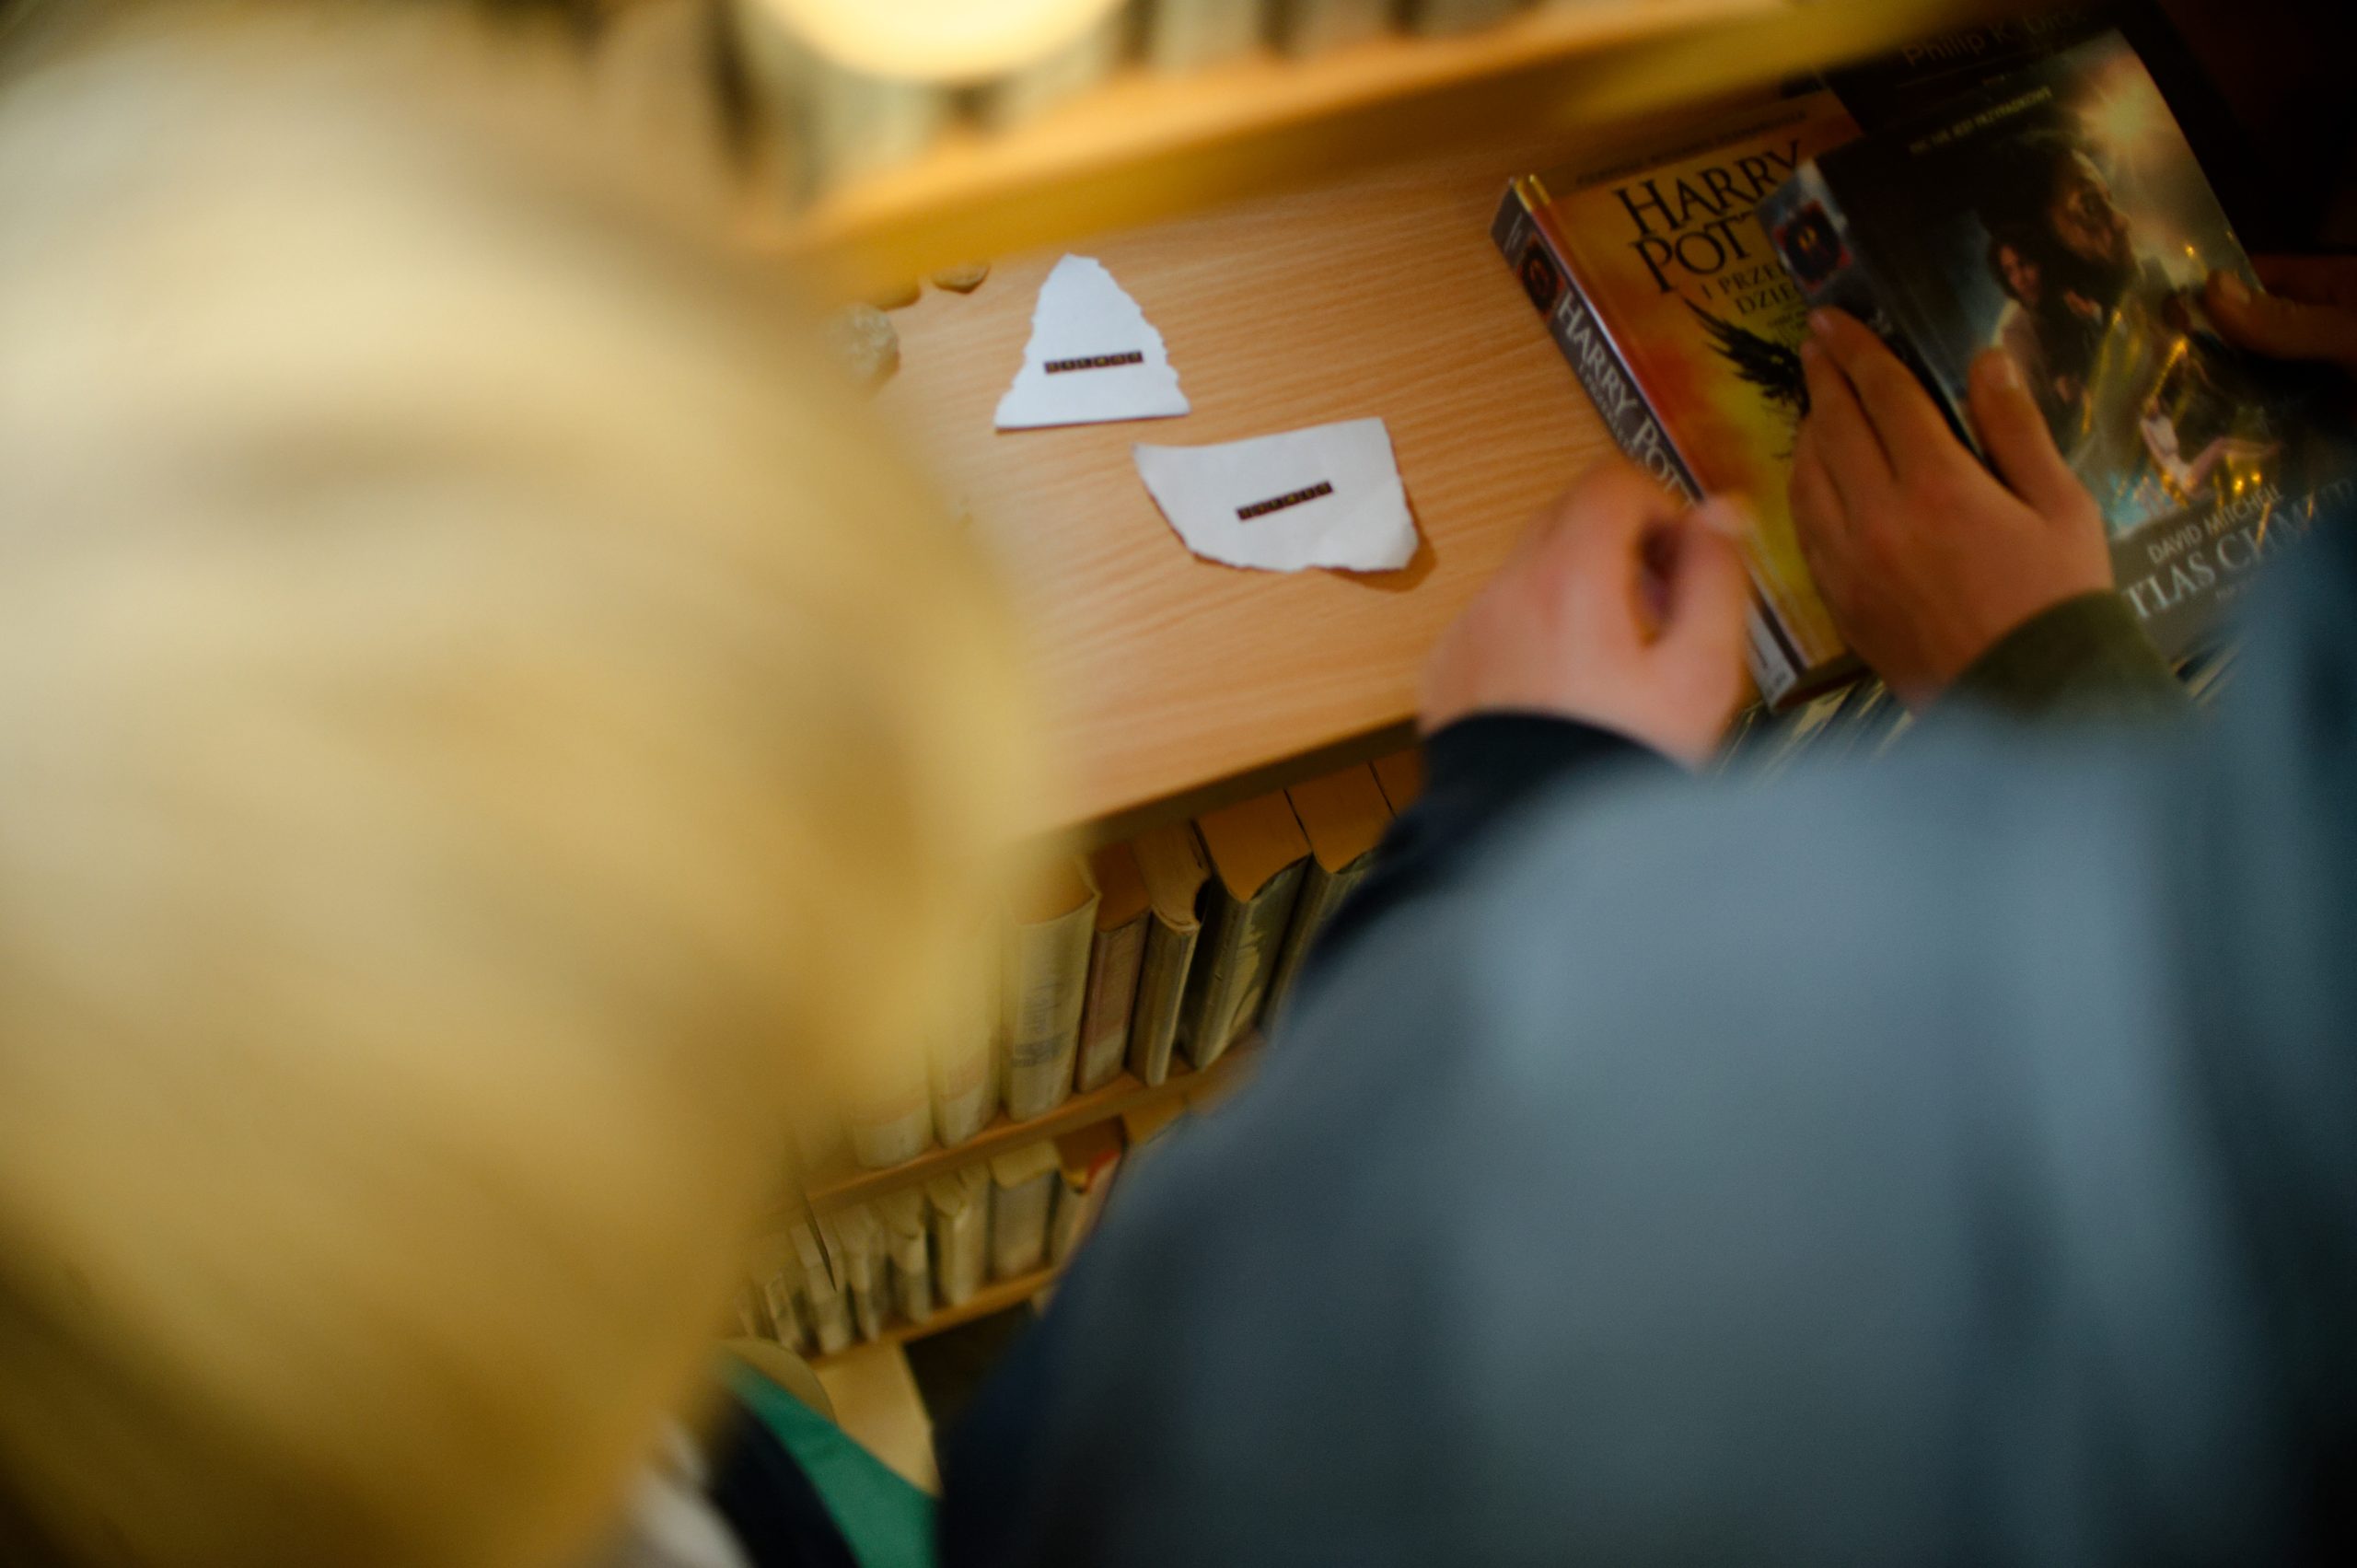 Widok na osoby patrzące na kawałki papieru z napisami leżącymi na bibliotecznej półce.